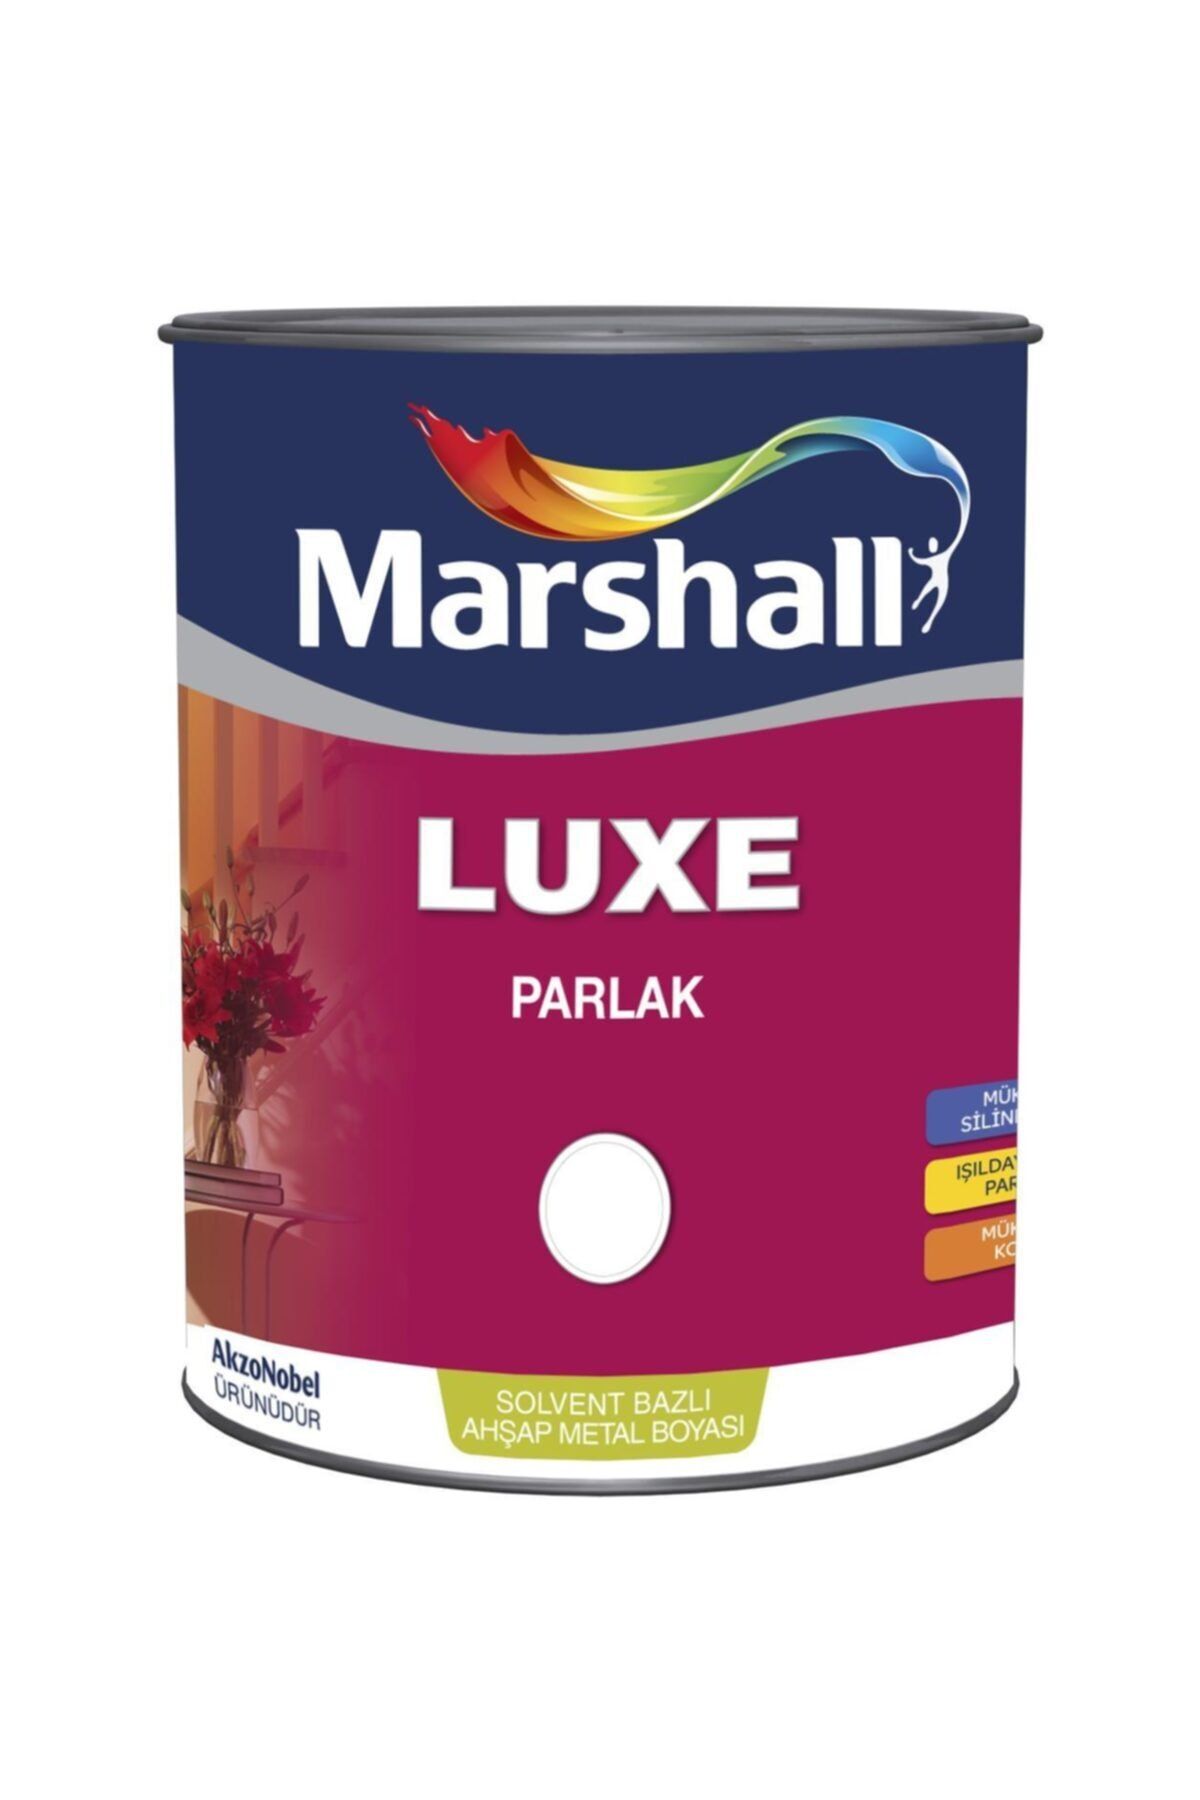 Marshall Luxe Parlak Sentetik Yağlı Boya 2.5 Lt Beyaz